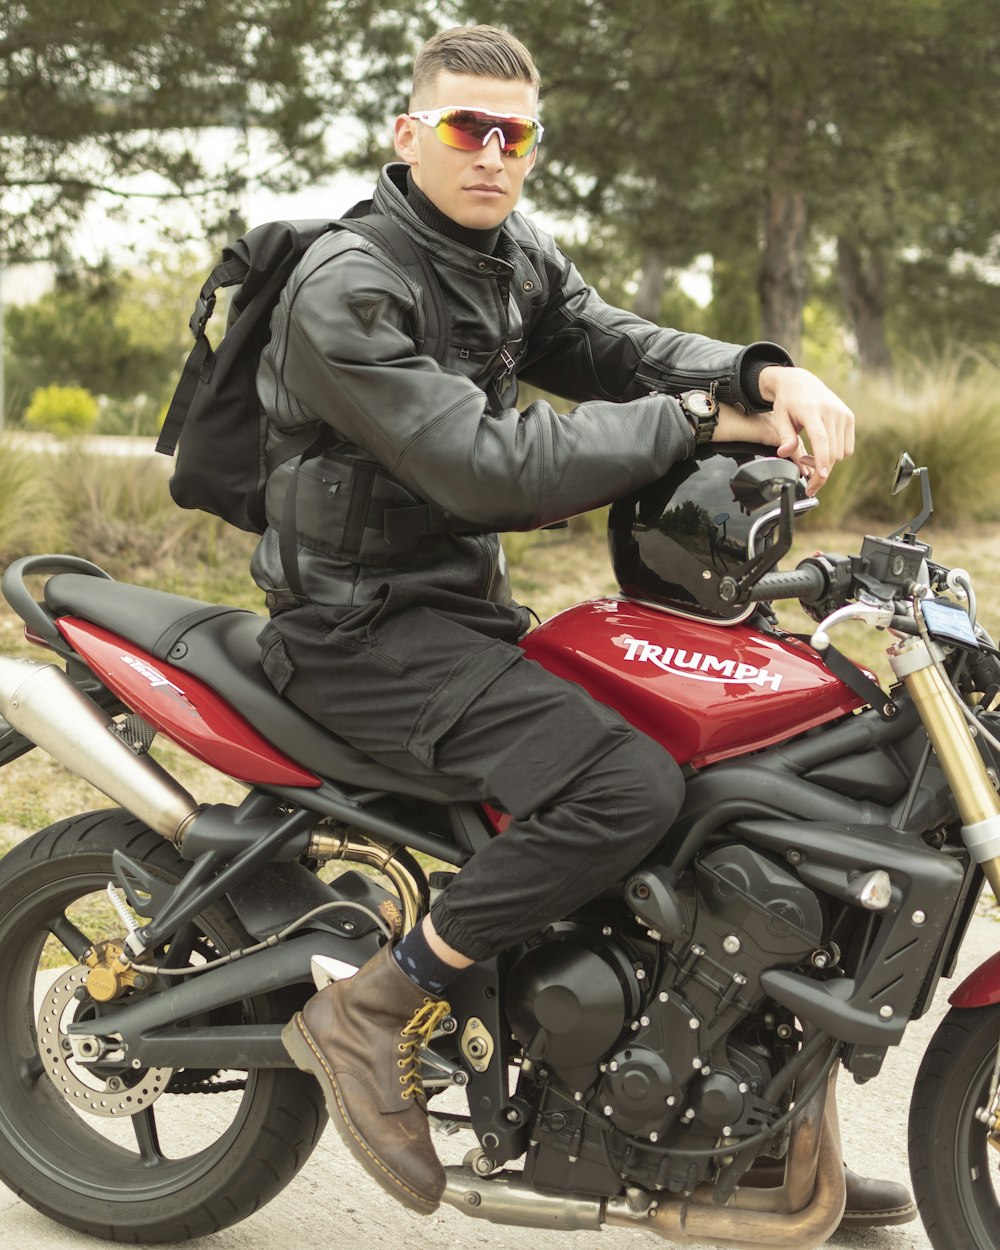 Hombre con chaqueta de cuero negro conduciendo motocicleta roja y negra